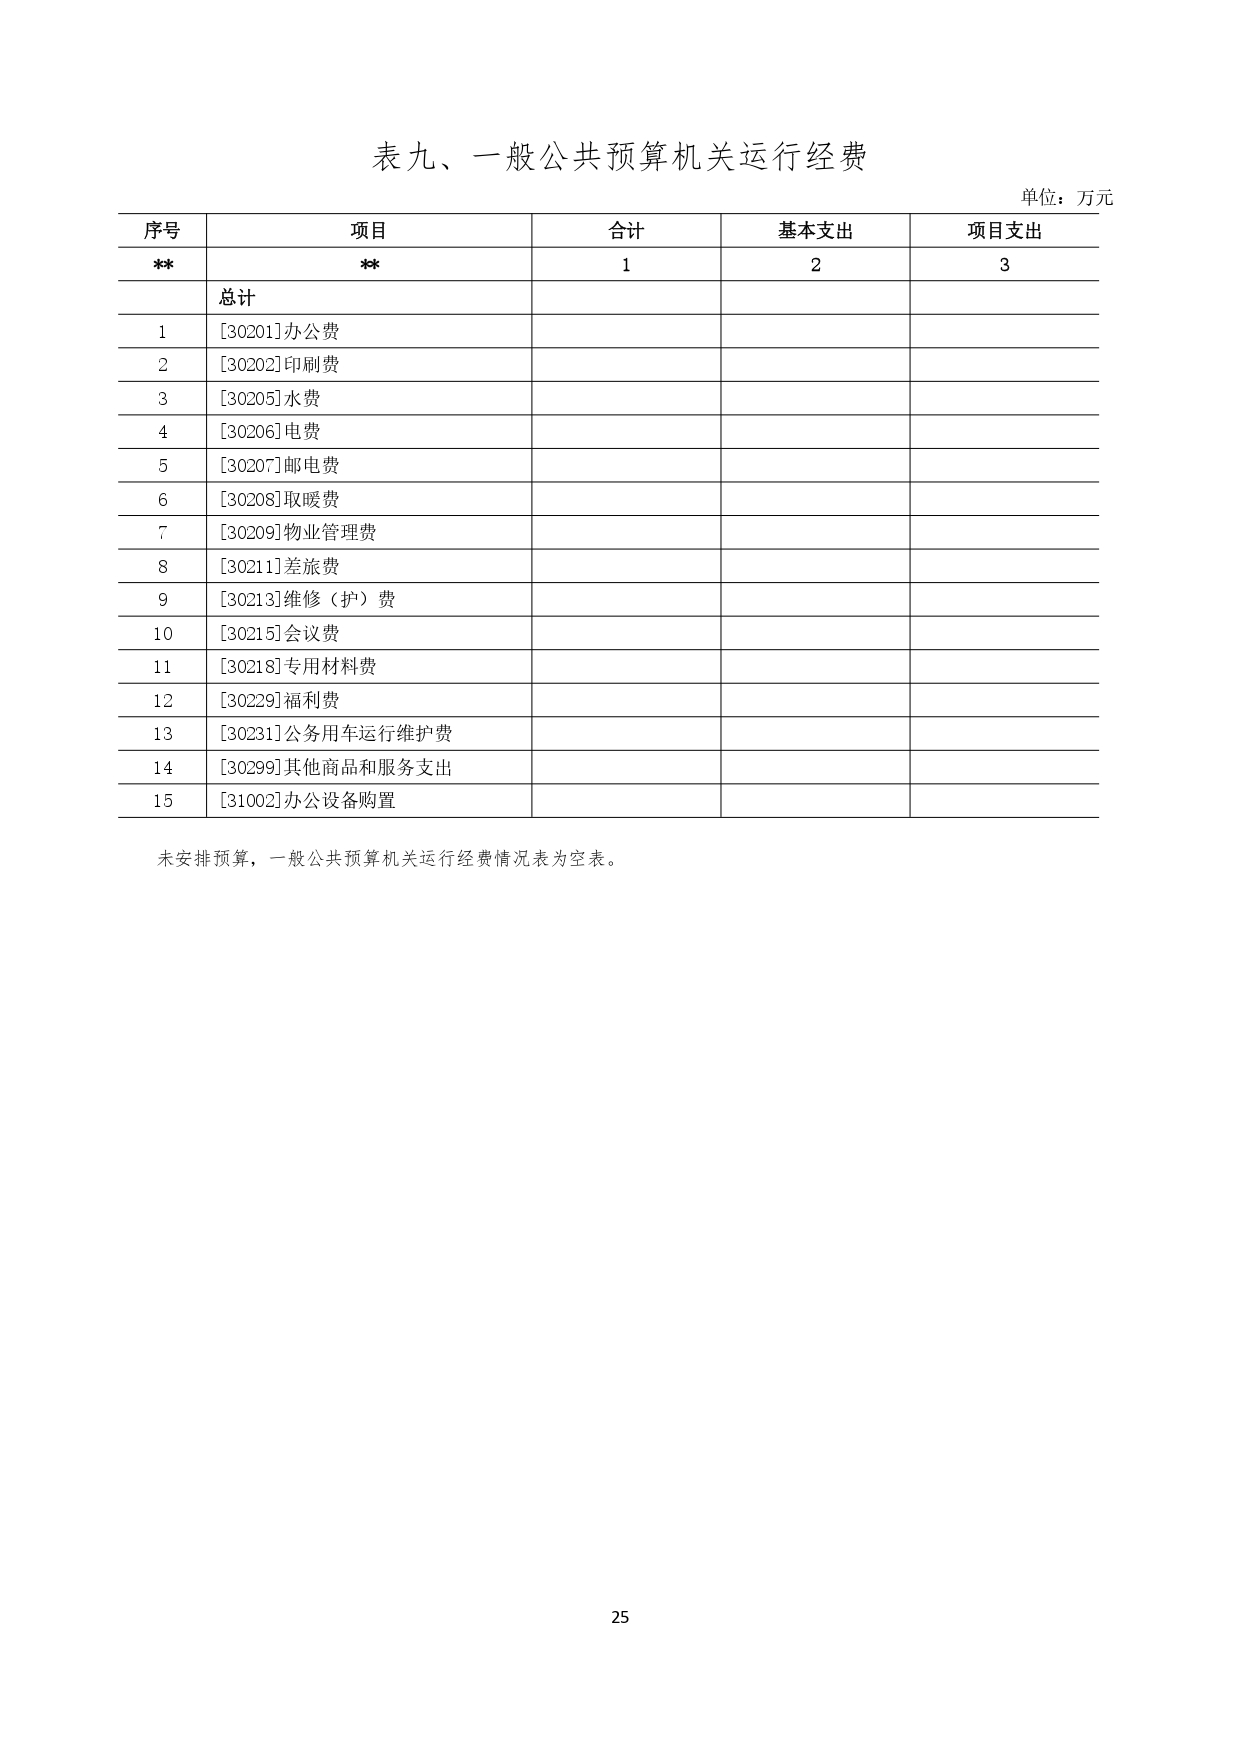 甘肃省广播电视学校2023年单位预算公开报告_page-0026.jpg